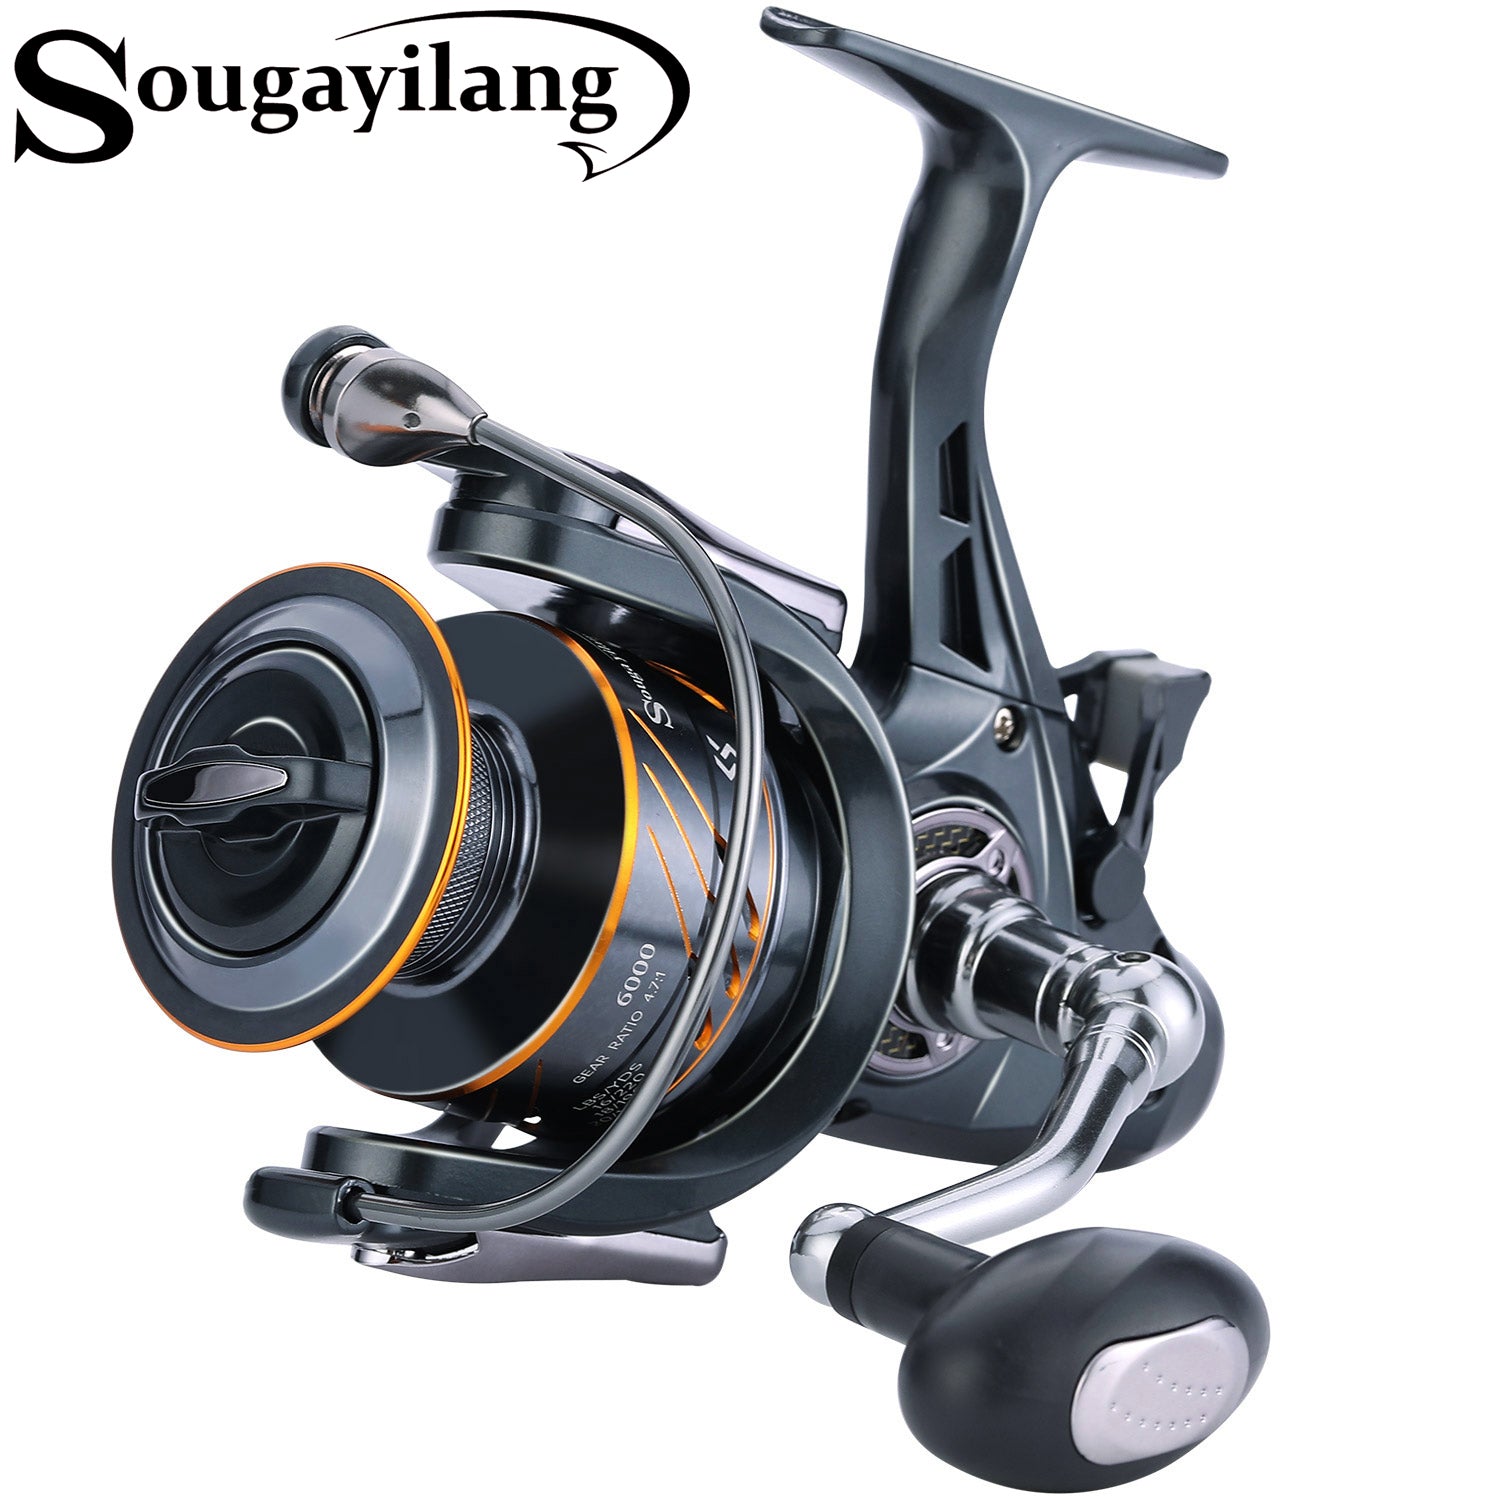 Sougayilang Spinning Reel - Freshwater and Saltwater Fishing Reels